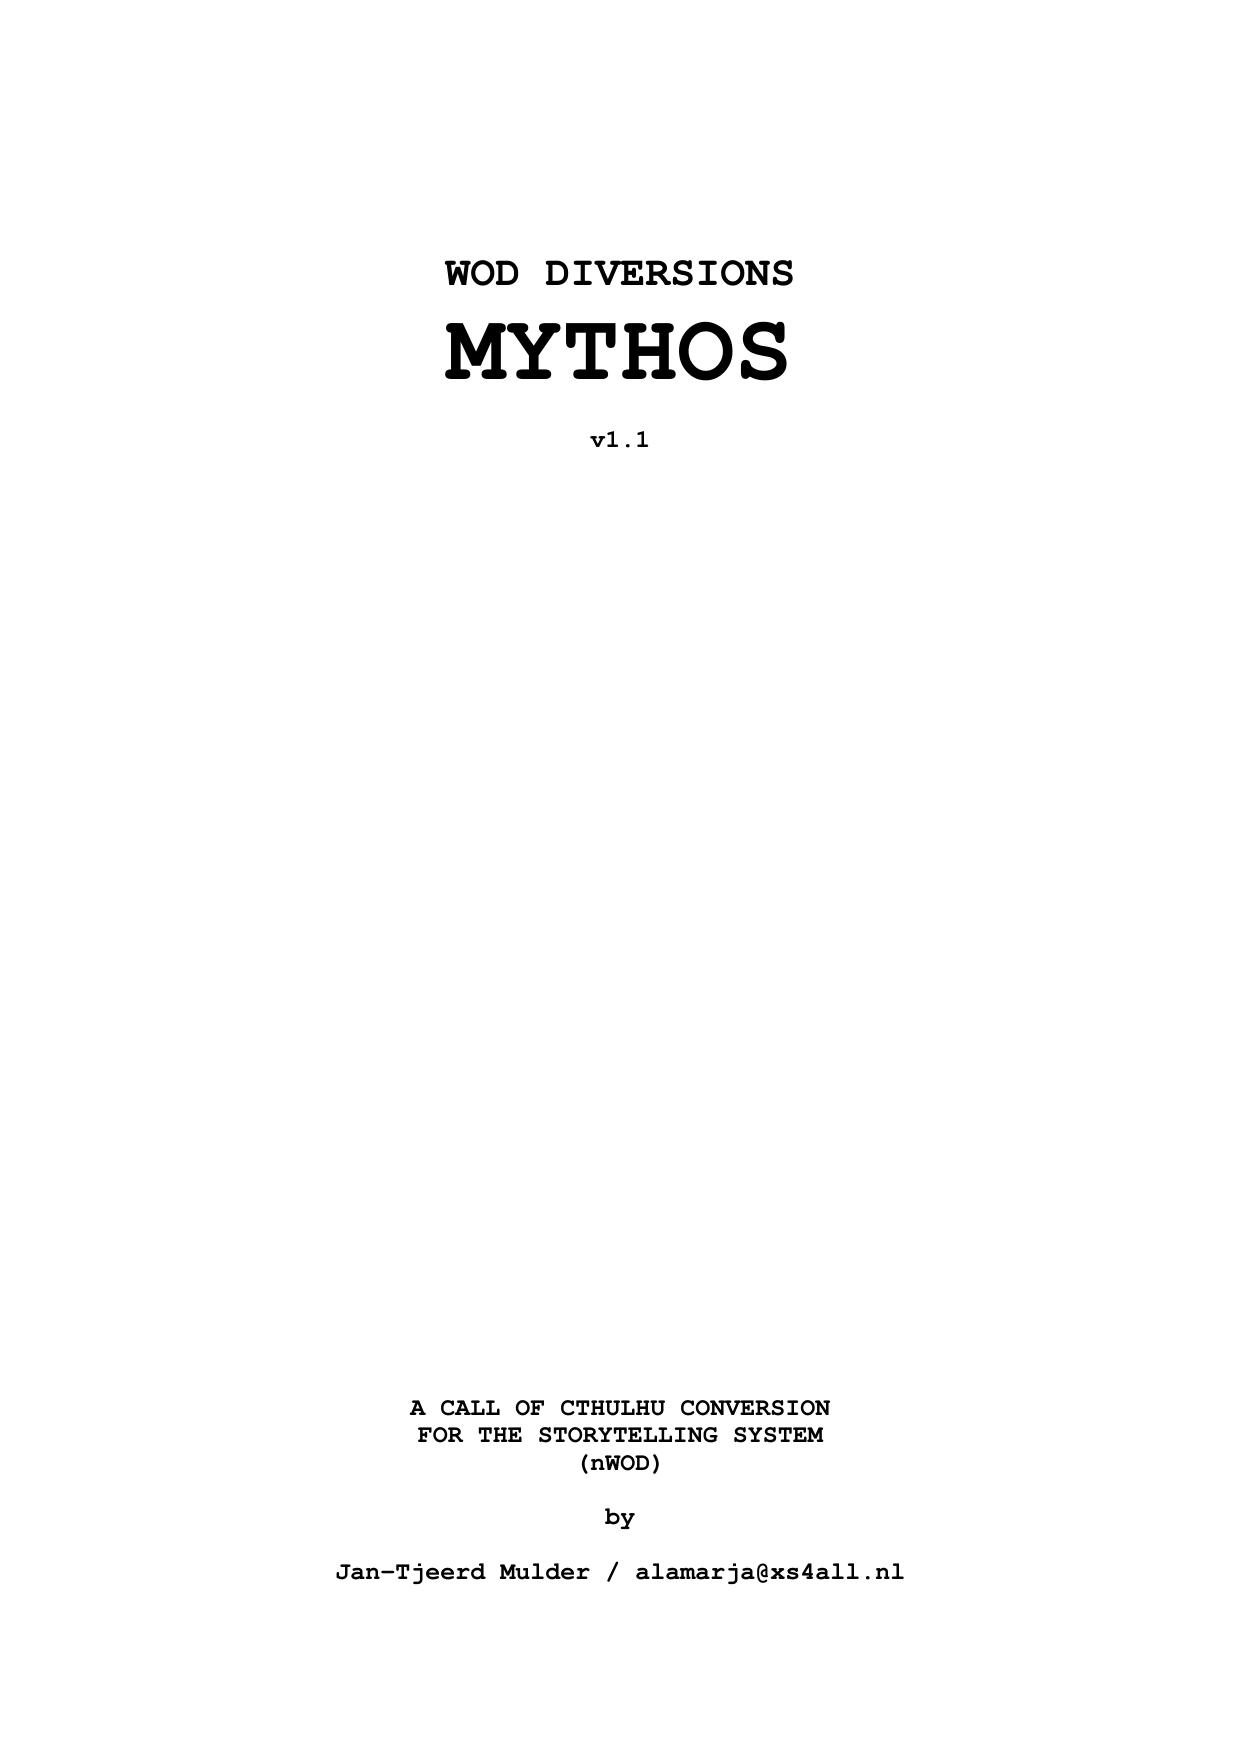 nwod mythos